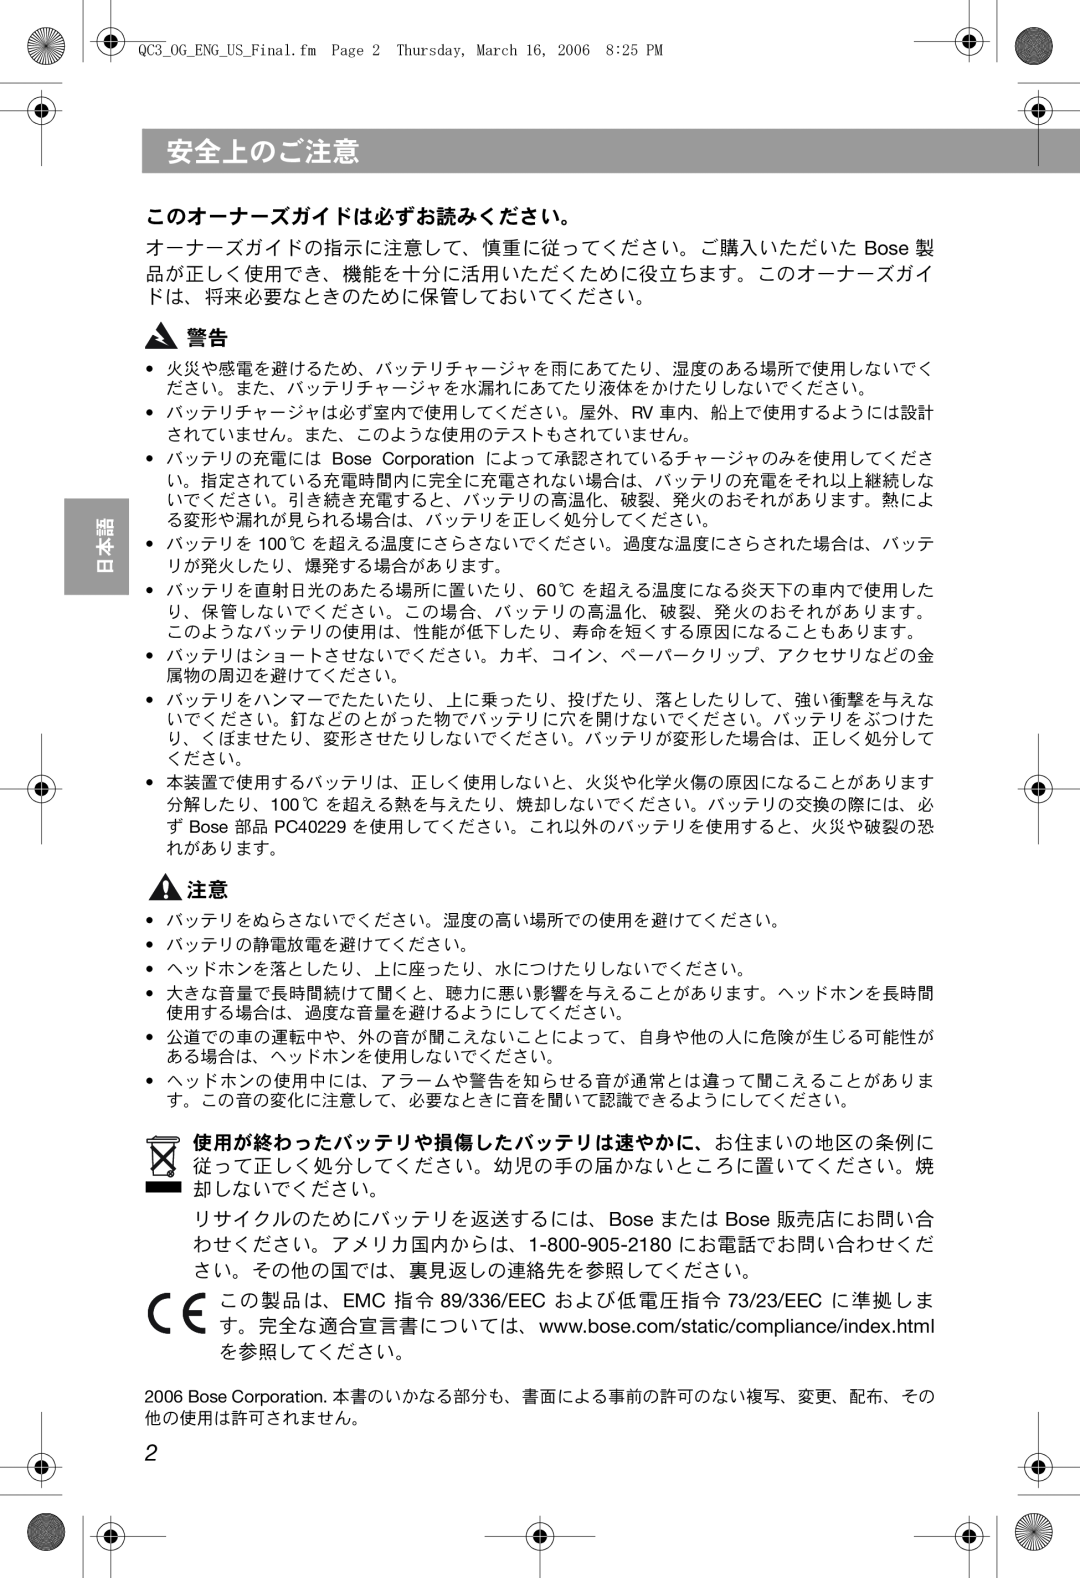 Bose QuietComfort 3 manual 安全上のご注意, このオーナーズガイドは必ずお読みください。, Thai, Korean, Arabic, Chinese 